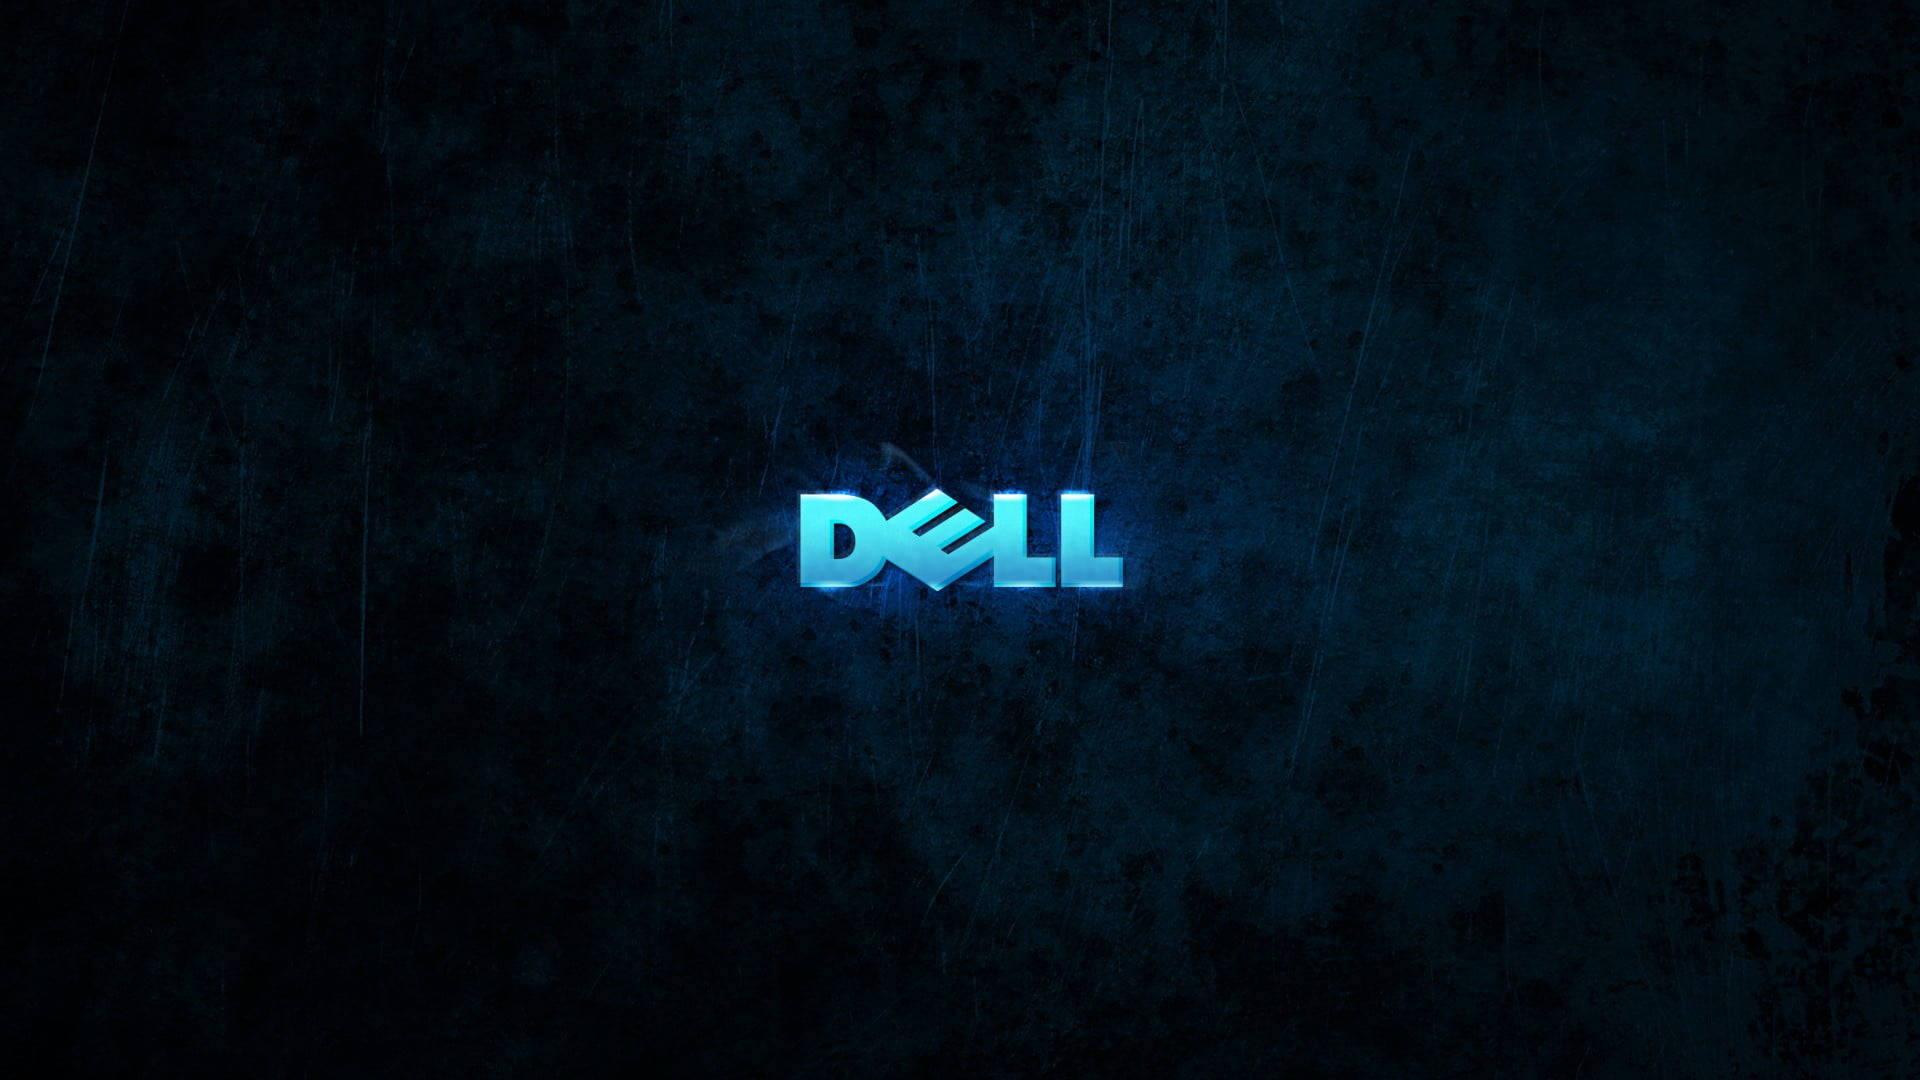 Glowing Blue Dell Laptop Logo Wallpaper